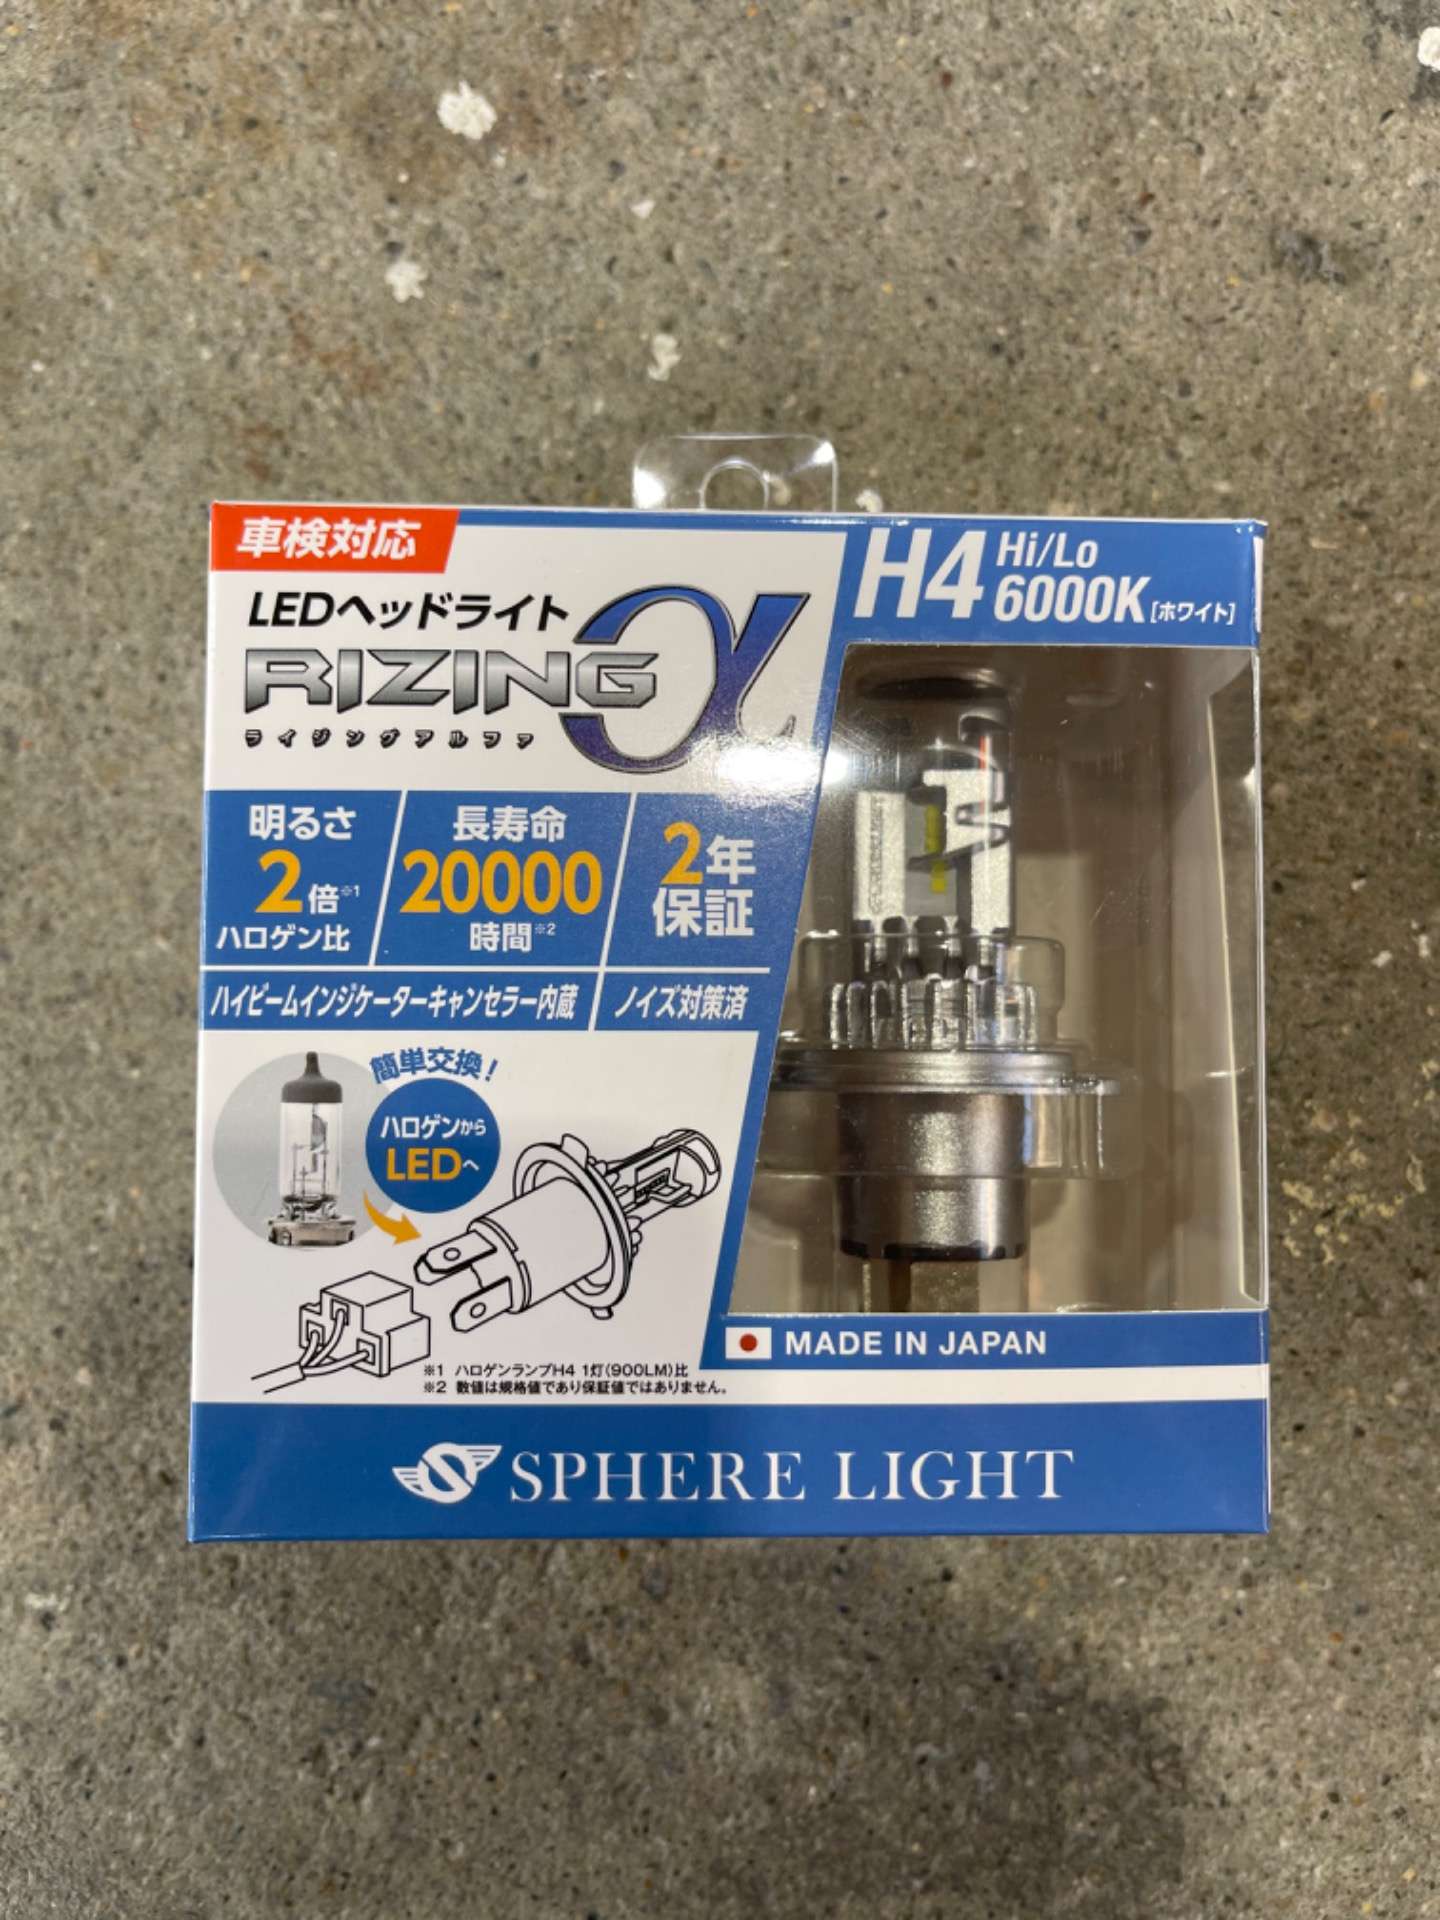 SPHERE LIGHT LEDヘッドライト 6000k